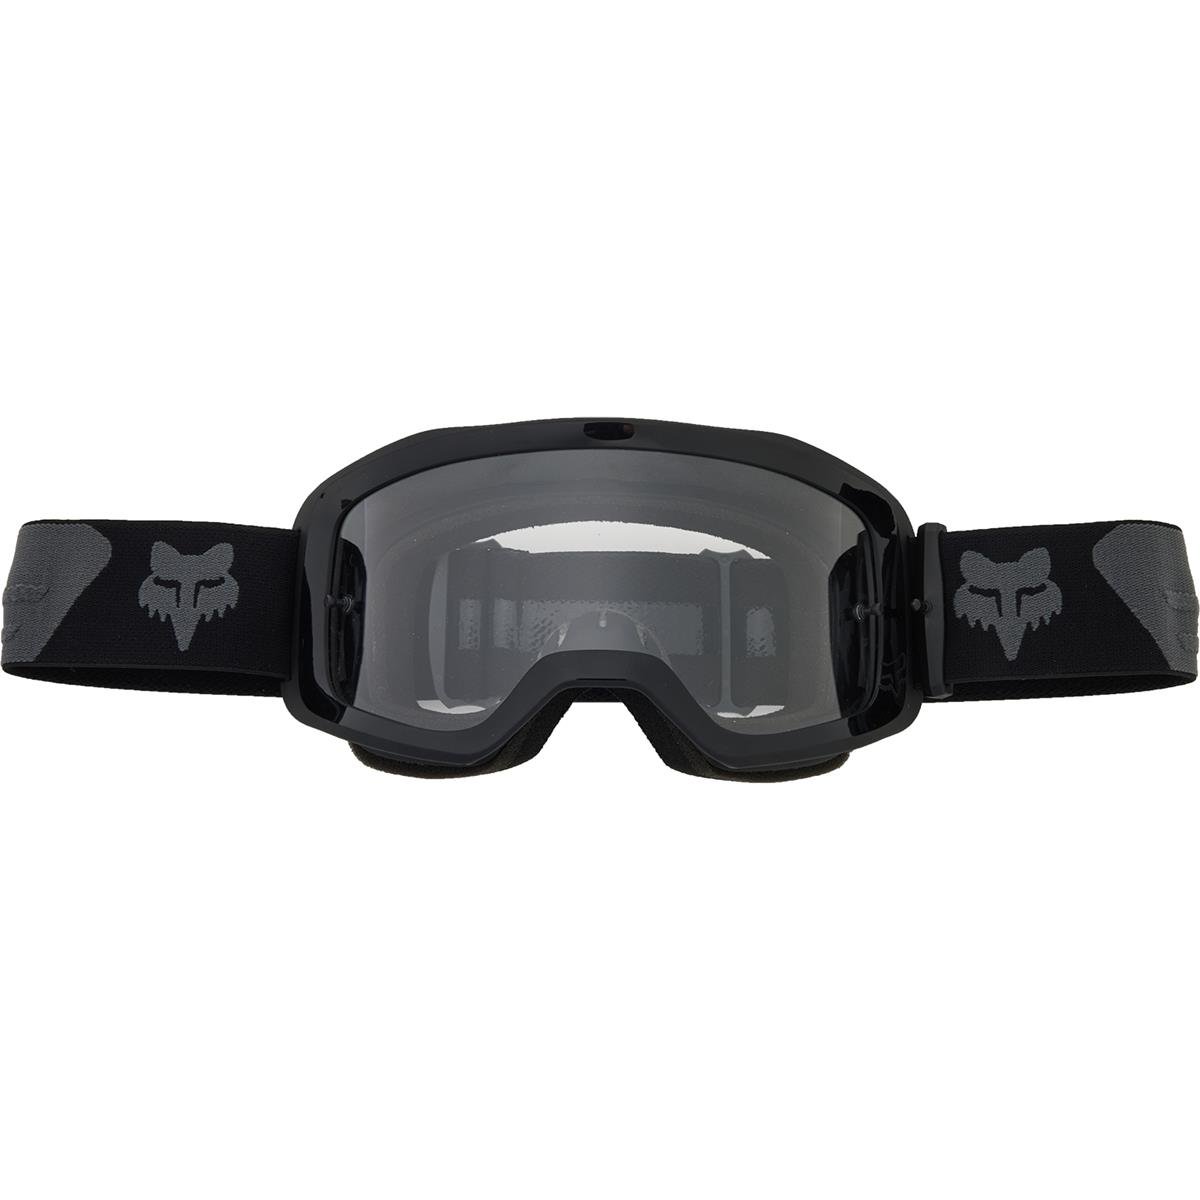 Fox Goggle Main Core - Black/Gray, Non-Mirrored